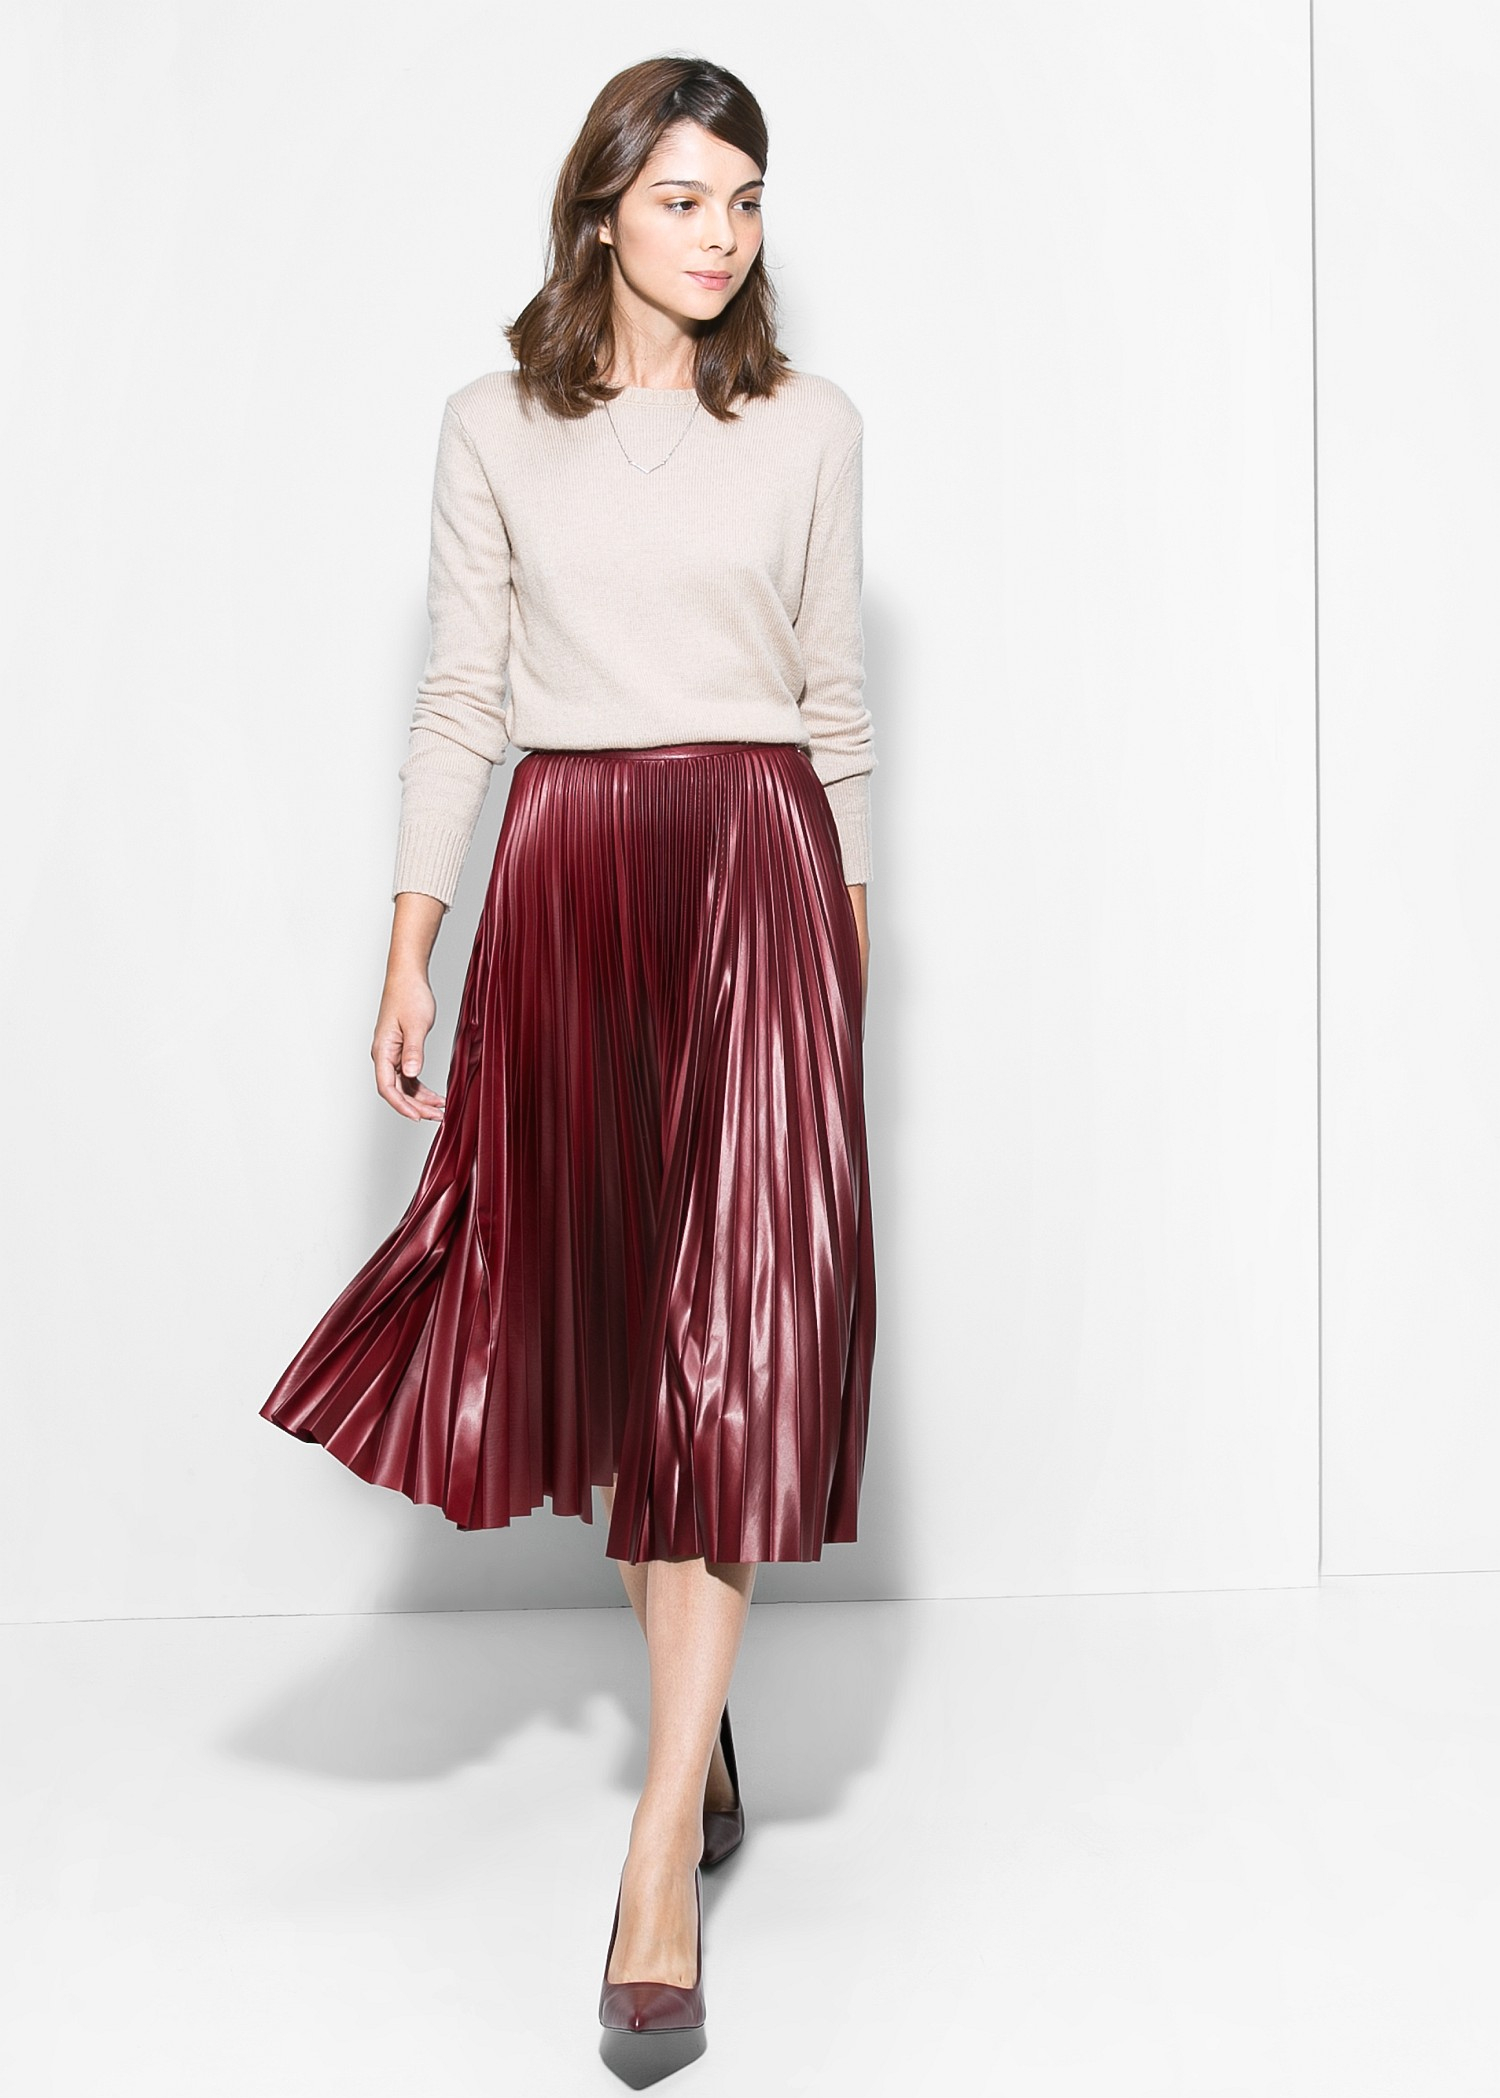 Mango Red Midi Skirt Top Sellers, 59% OFF | www.asdonline.co.uk